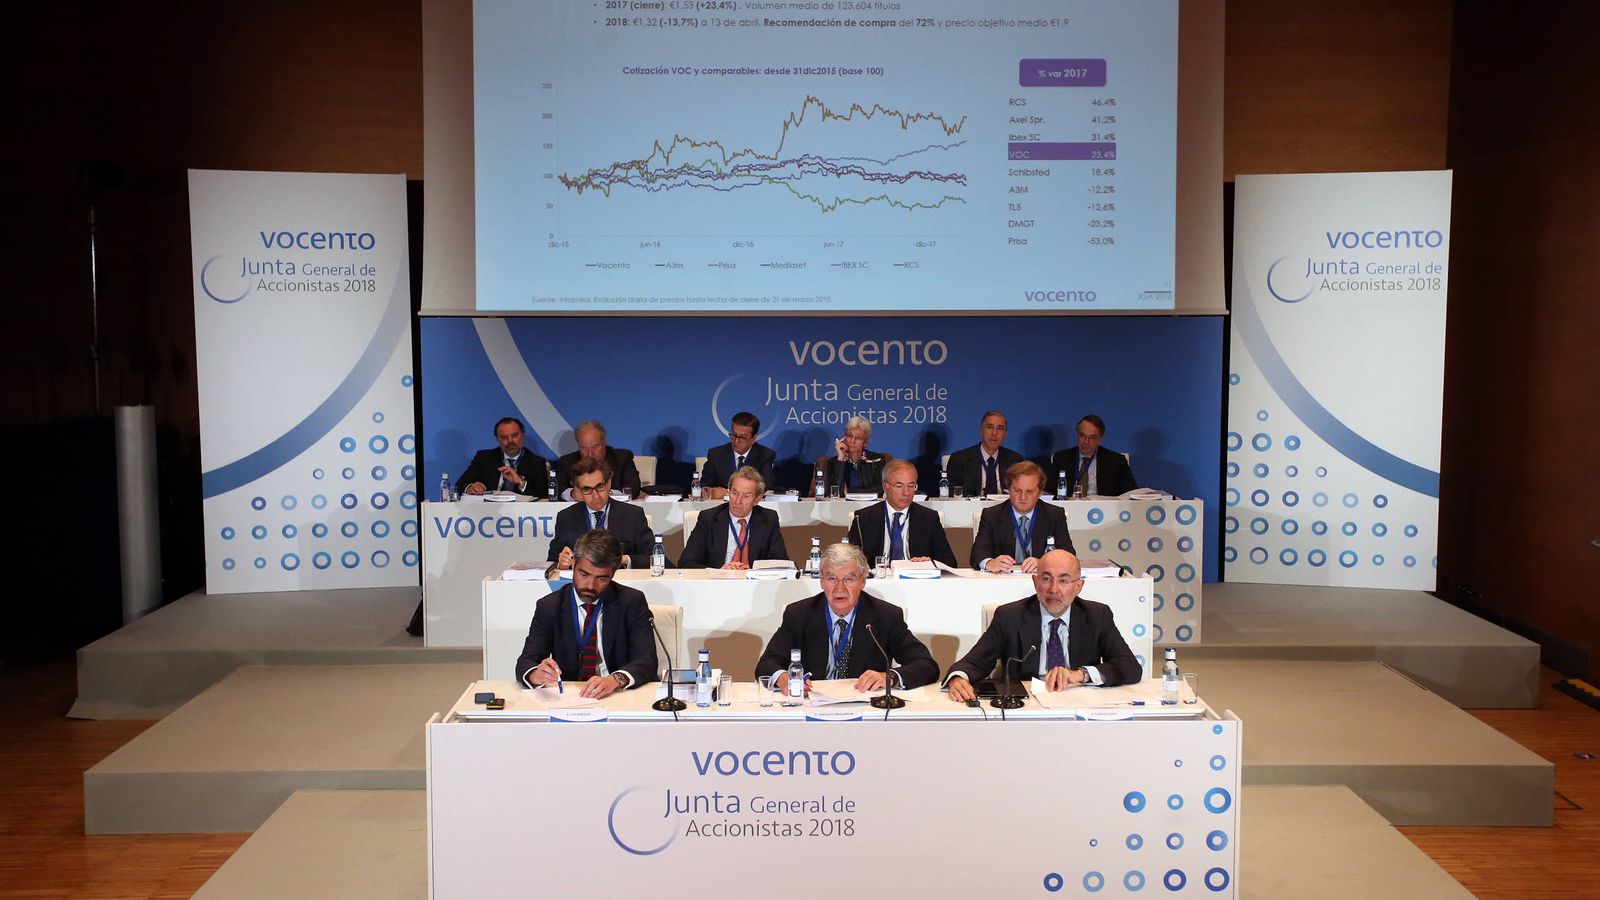 Foto: Junta general de accionistas de Vocento 2018. (Vocento)